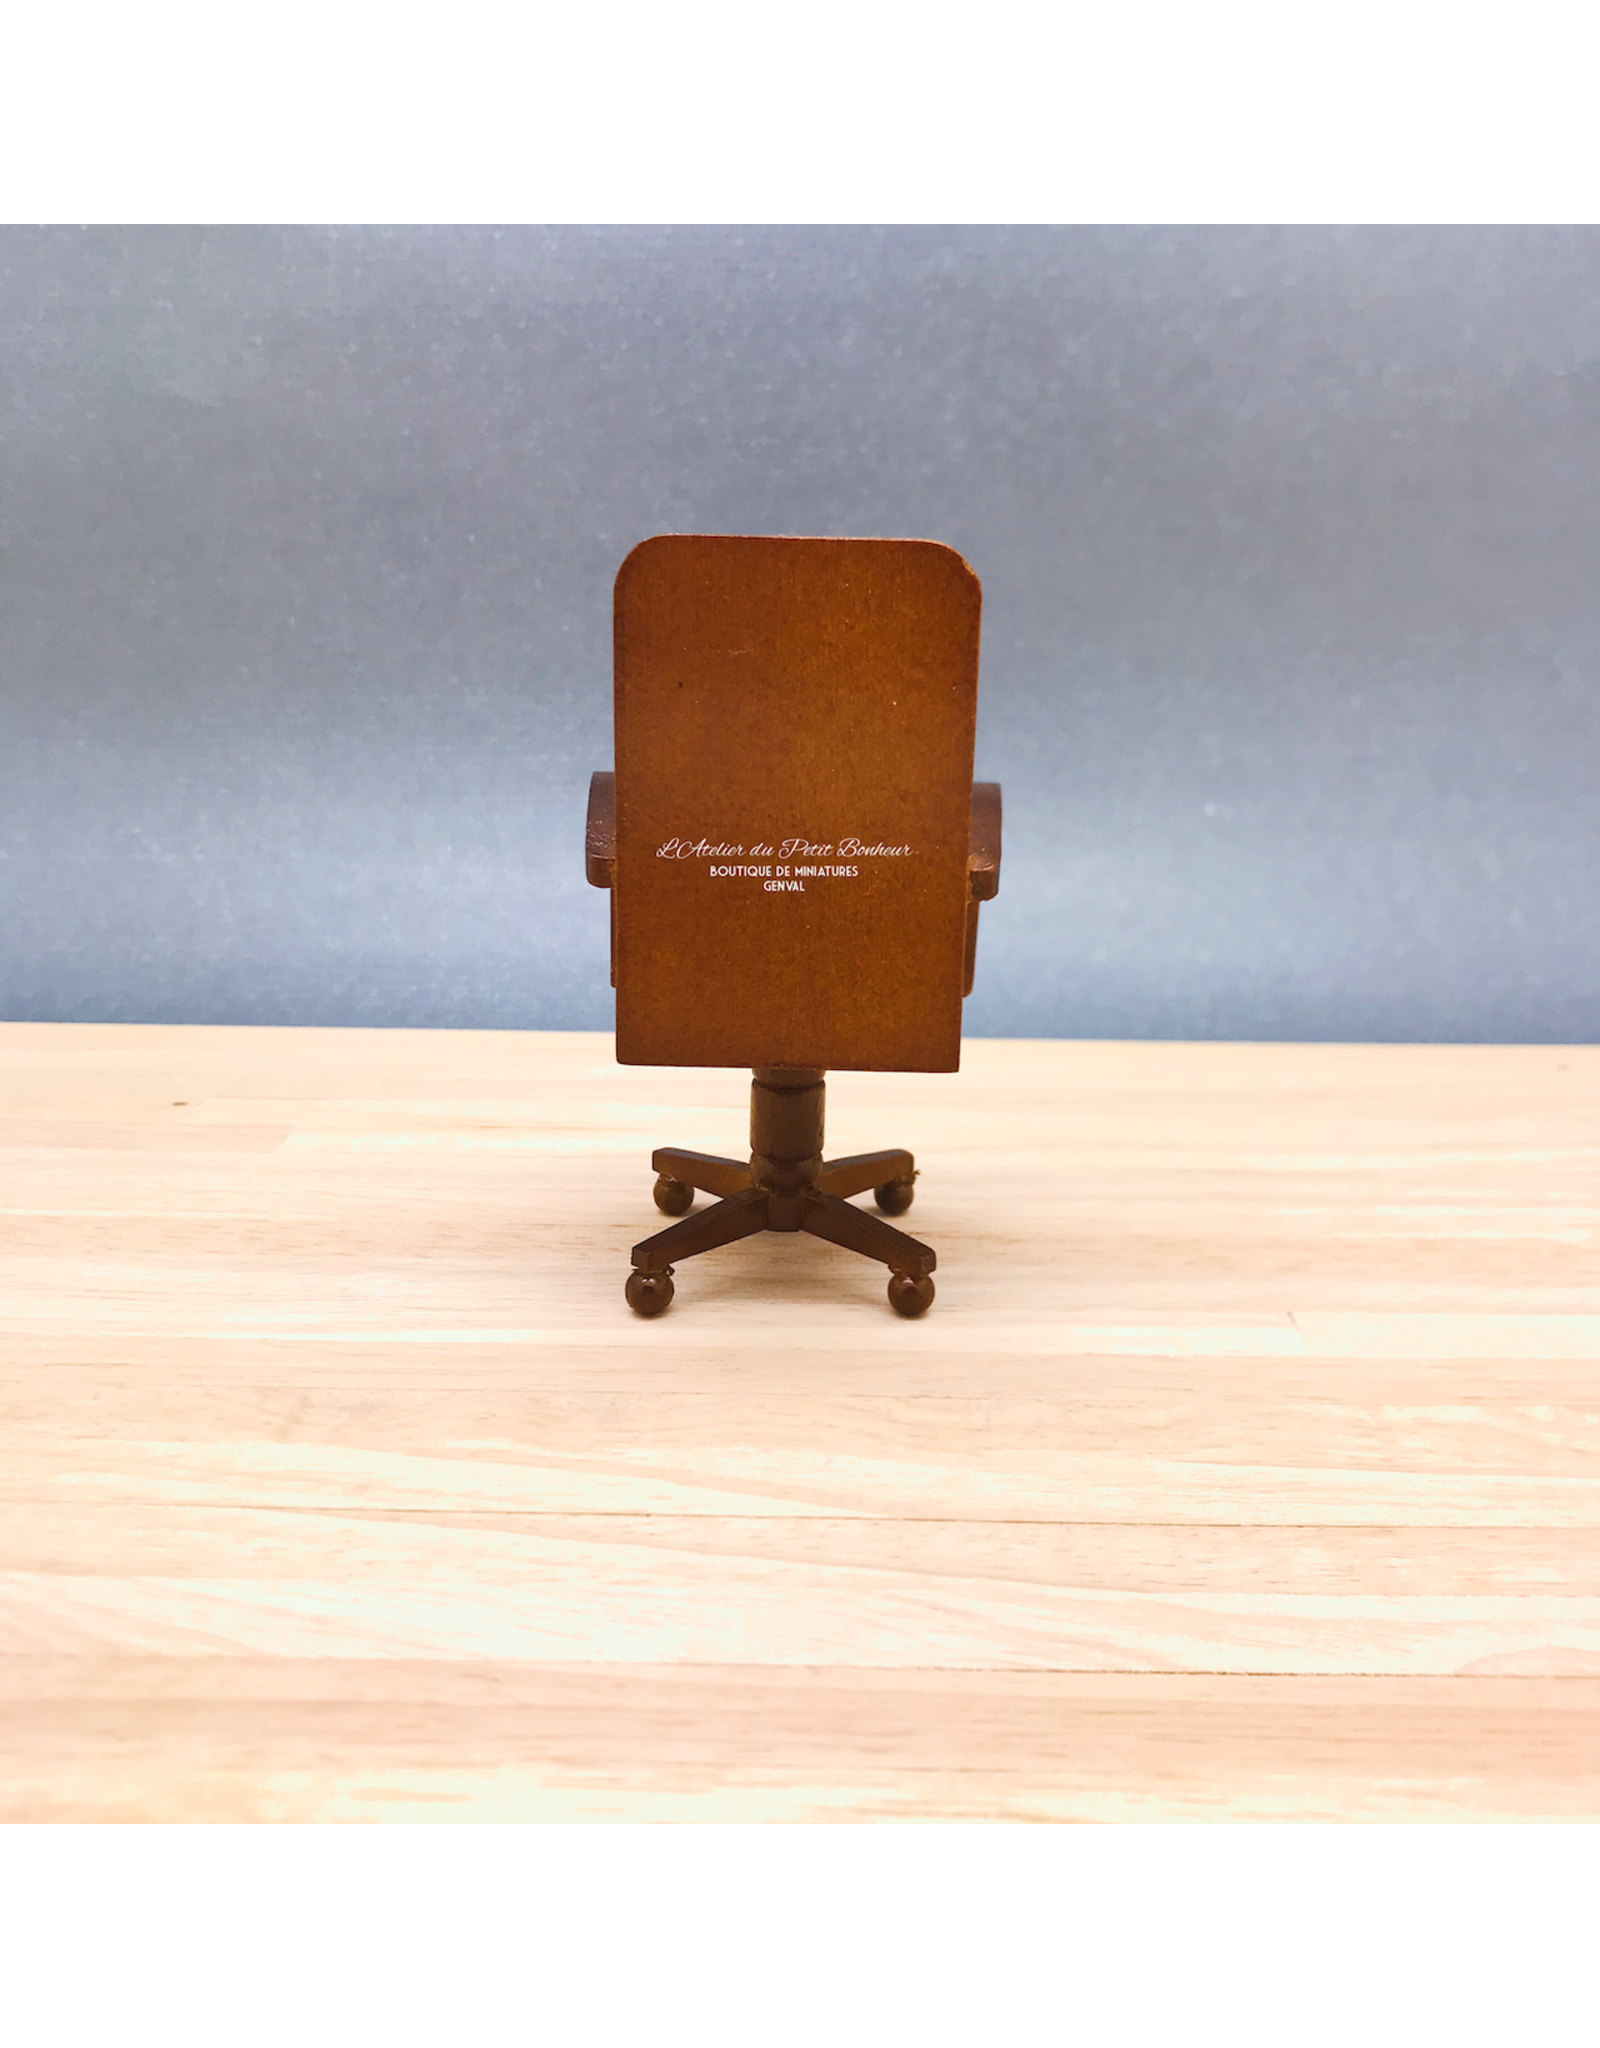 Chaise de bureau cuir noir Noyer miniature 1:12